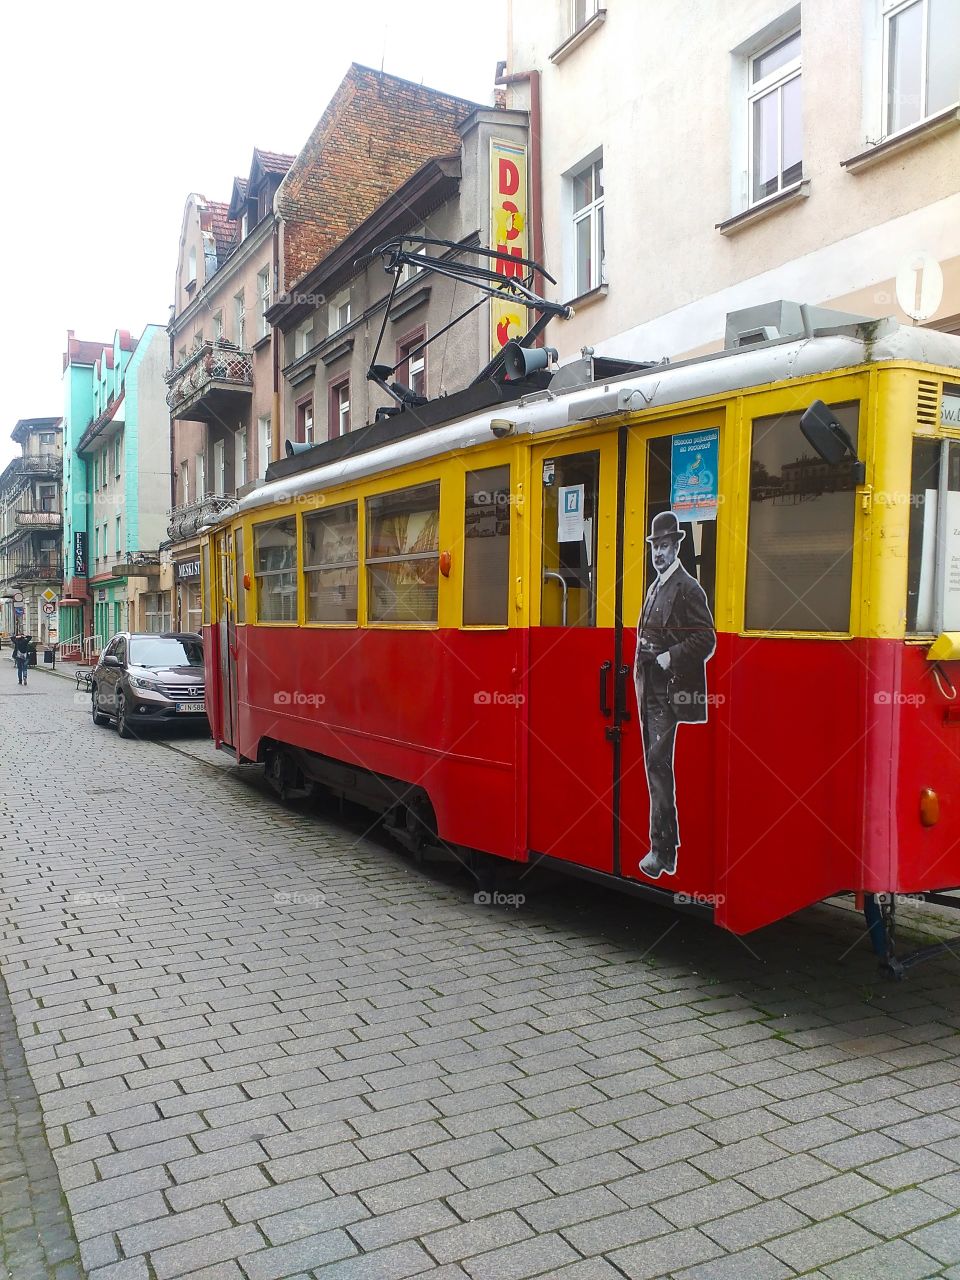 tramway tourist